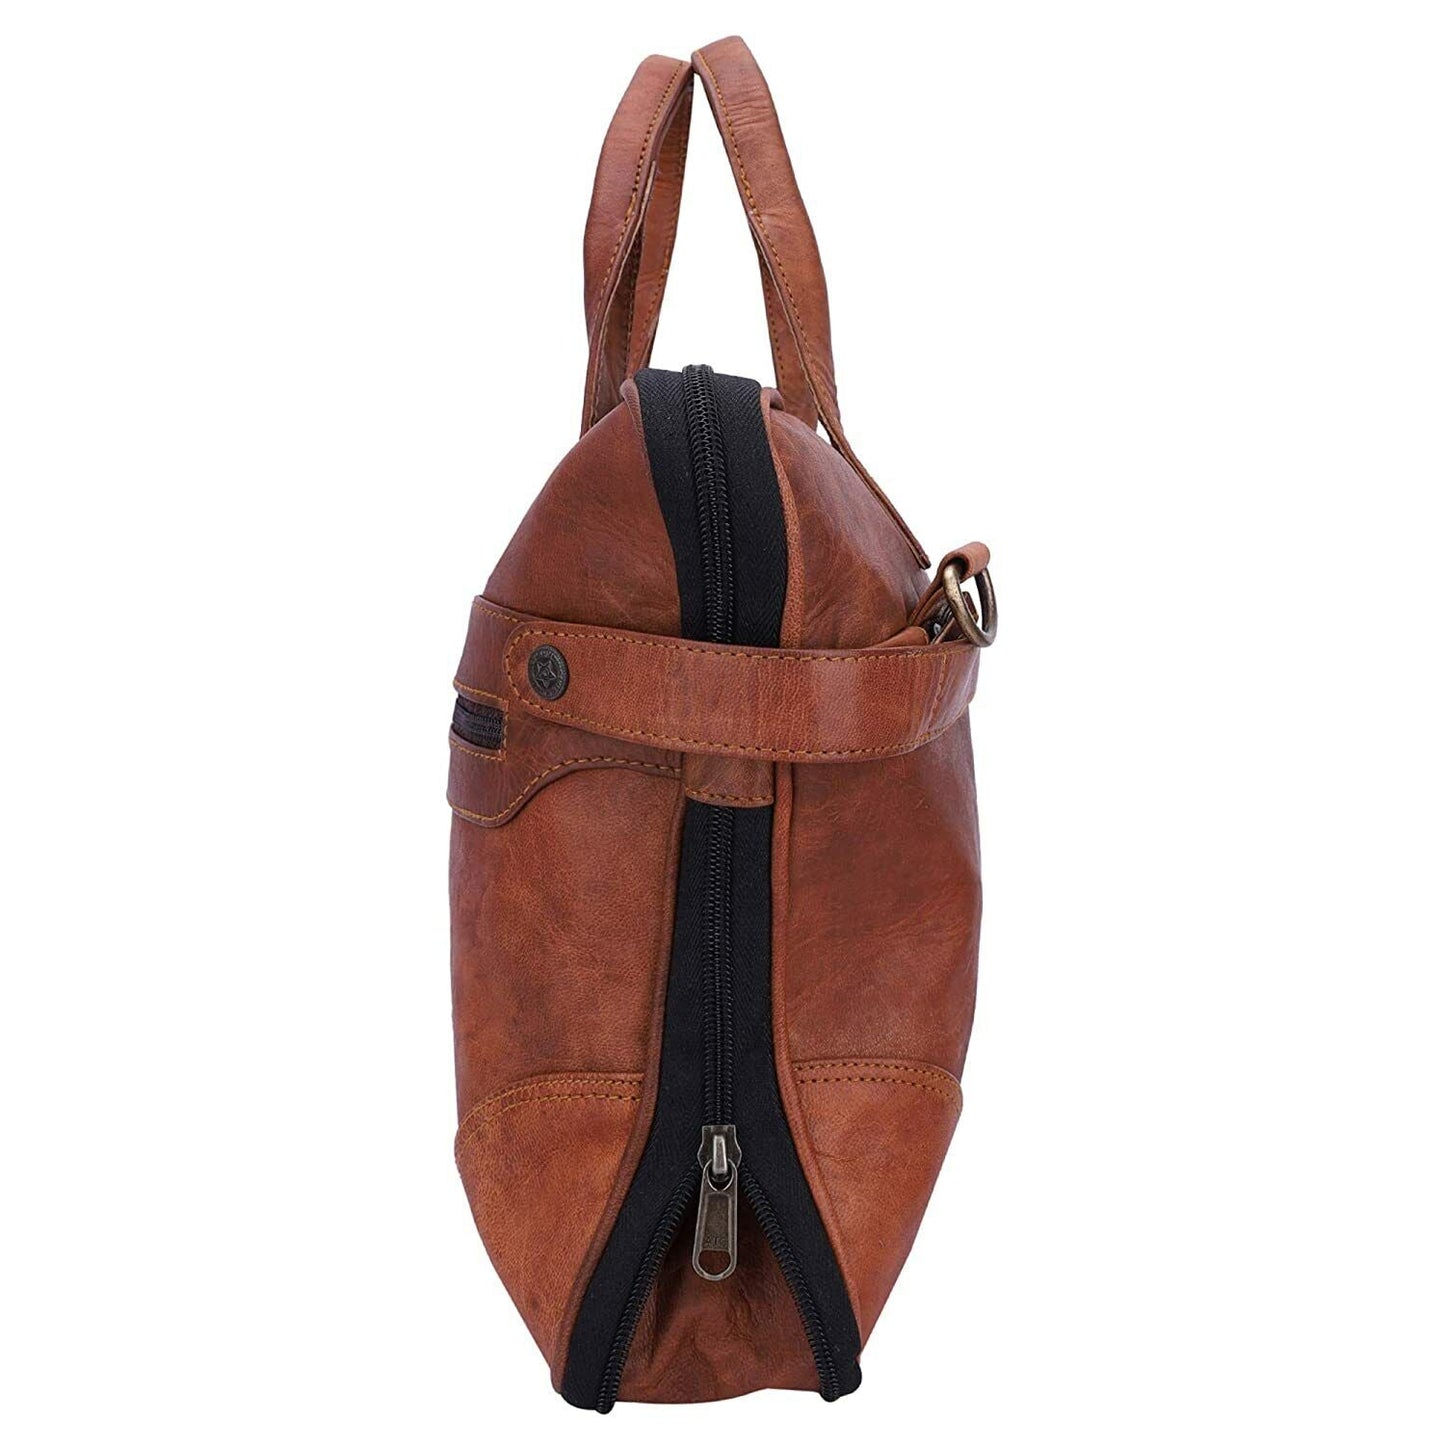 15" Laptop Sleev Briefcase Satchel Bag Men's Leather Genuine Vintage Messenger